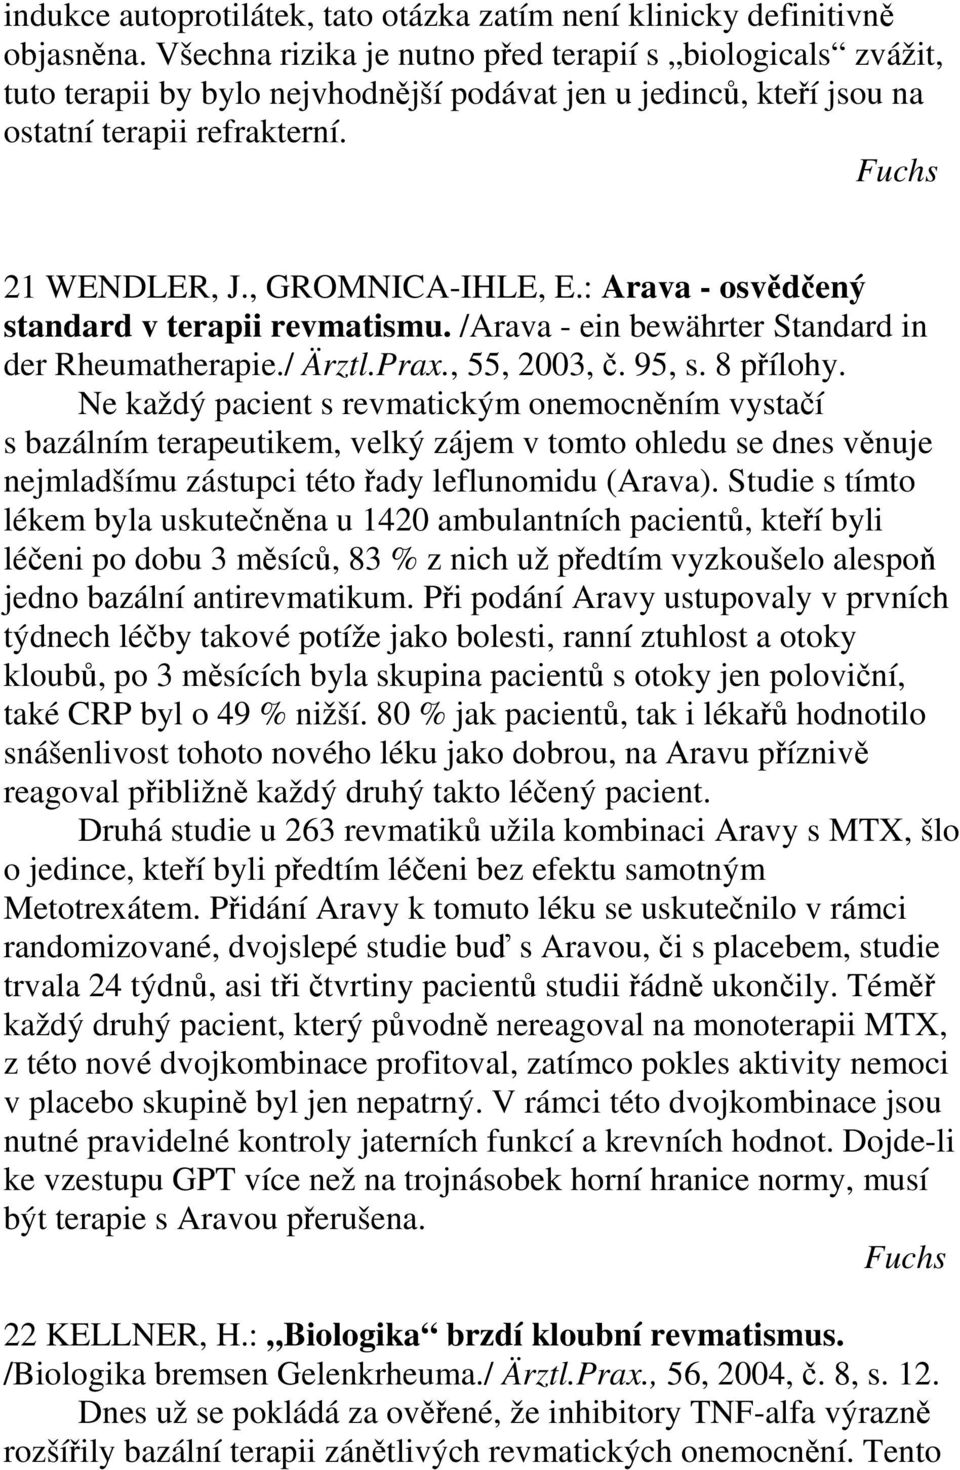 : Arava - osvědčený standard v terapii revmatismu. /Arava - ein bewährter Standard in der Rheumatherapie./ Ärztl.Prax., 55, 2003, č. 95, s. 8 přílohy.